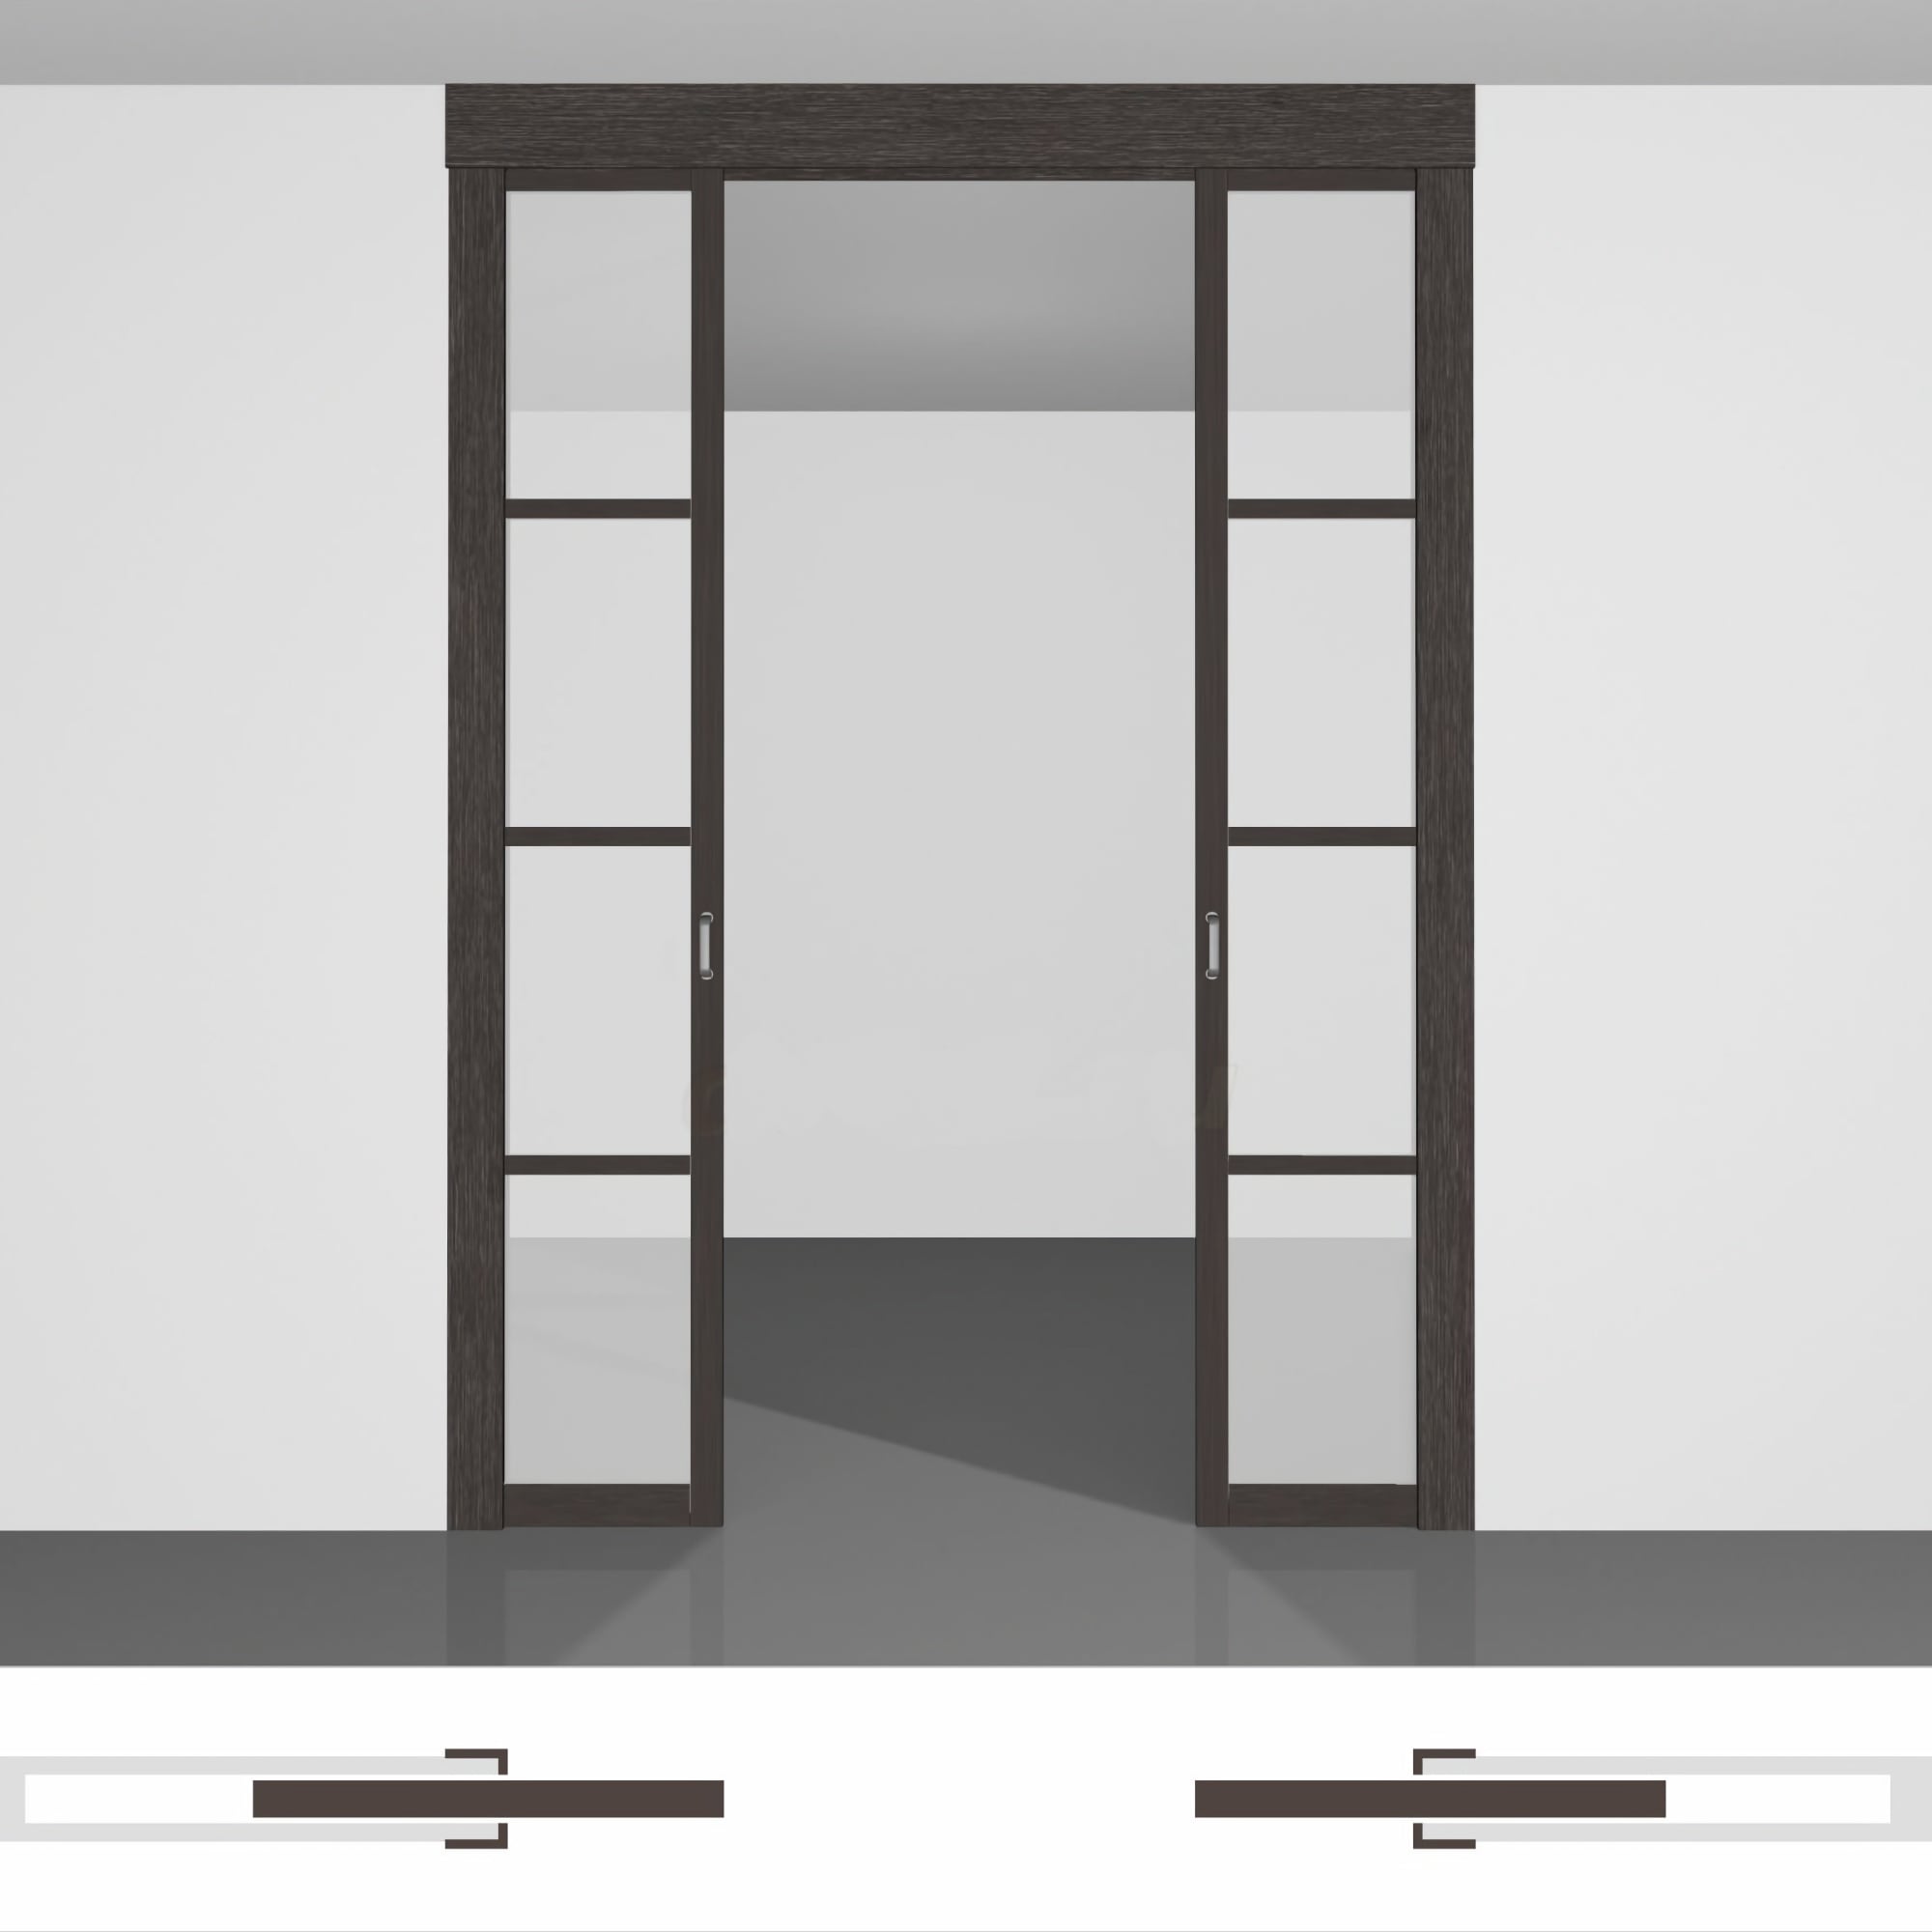 Раздвижные двери в стену P01.2 двойной комплект • высота до 2430 мм • полотна внутрь стены